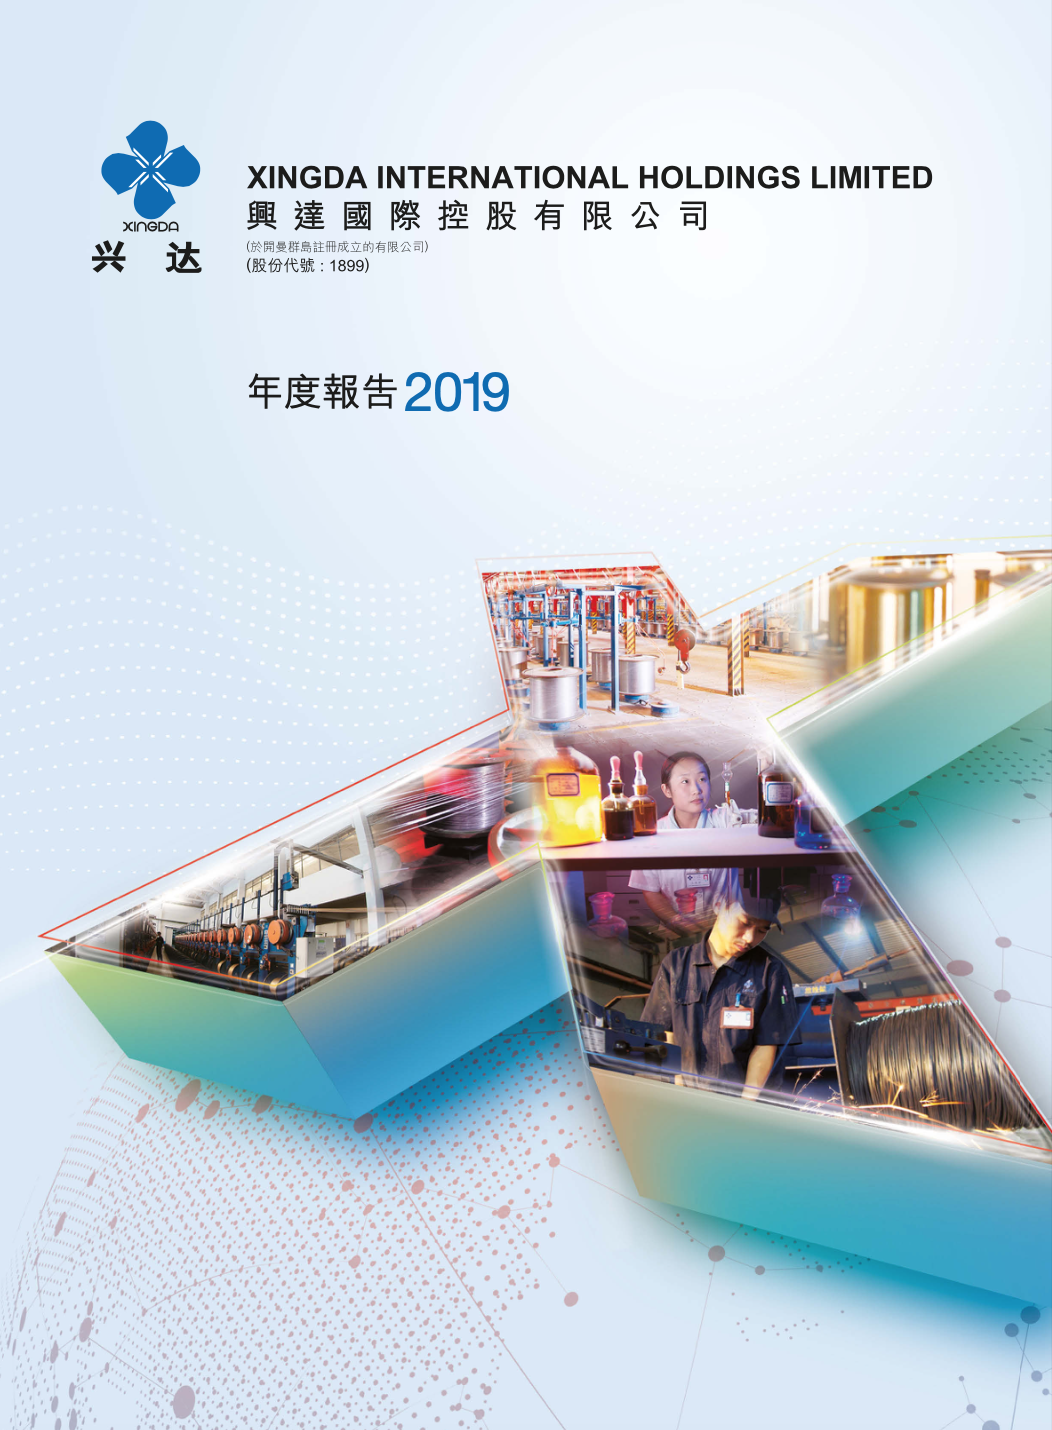 XINGDA Annual Report 2019